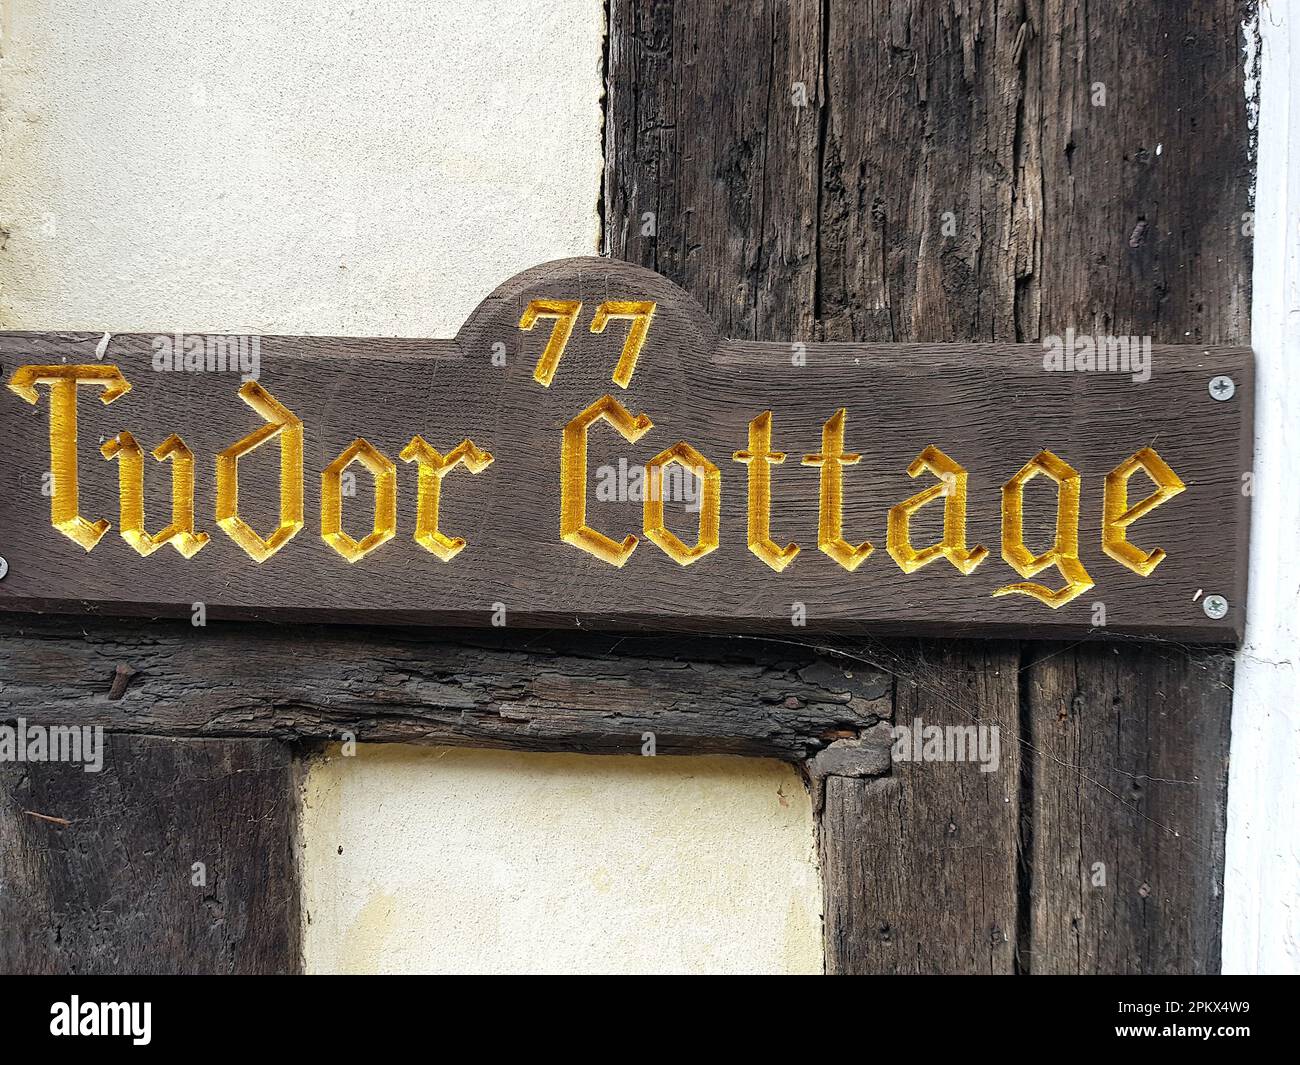 Der Name eines Hauses in altmodischen goldenen Buchstaben auf einer Holztafel. Stockfoto